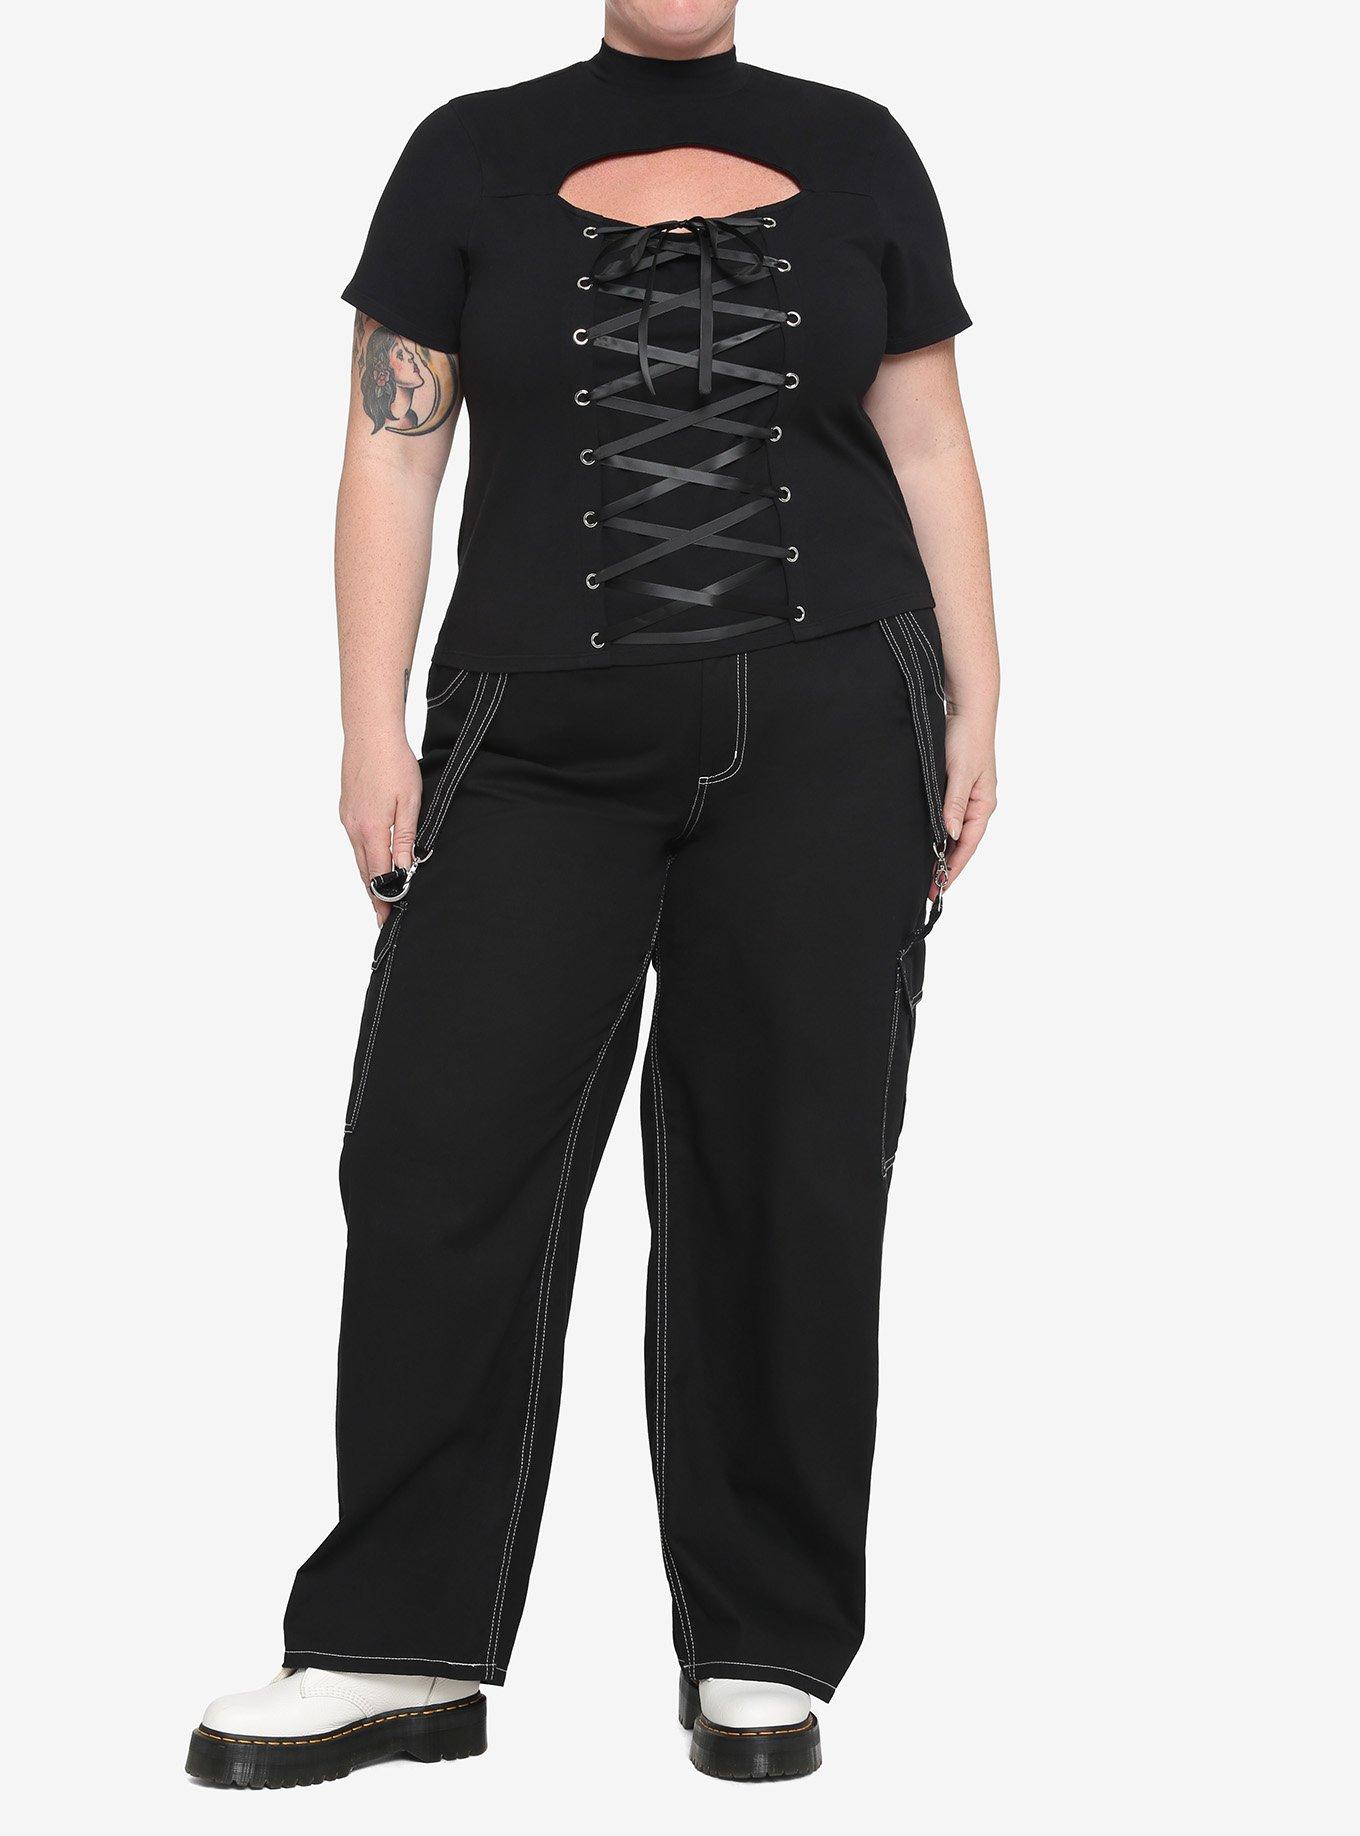 Black Lace-Up Cutout Girls Crop T-Shirt Plus Size, BLACK, alternate